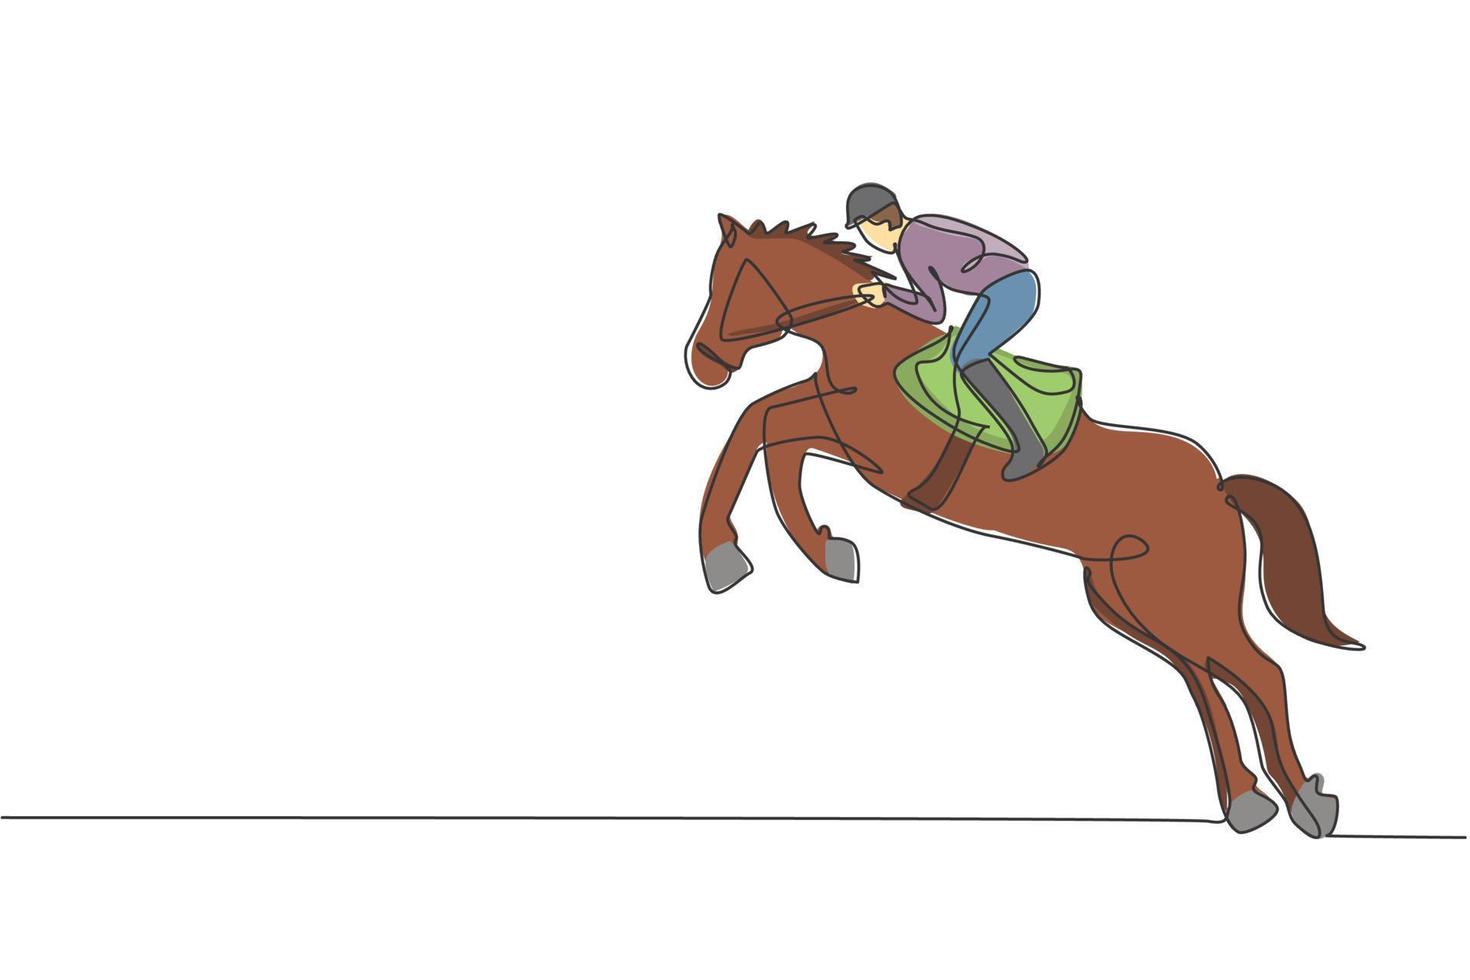 um desenho de linha contínua do jovem cavaleiro em ação. treinar equino para pular na pista de corrida. conceito de competição de esporte equestre. ilustração em vetor gráfico de desenho de linha única dinâmica